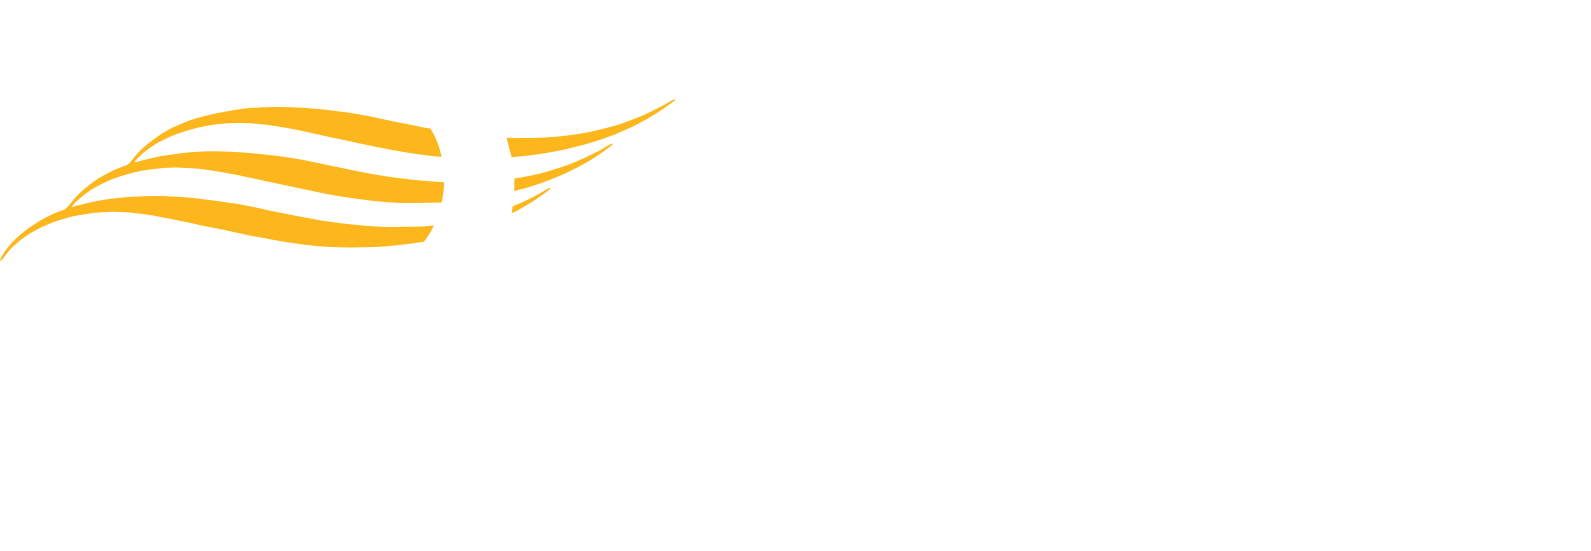 Inari Medical
 logo large for dark backgrounds (transparent PNG)